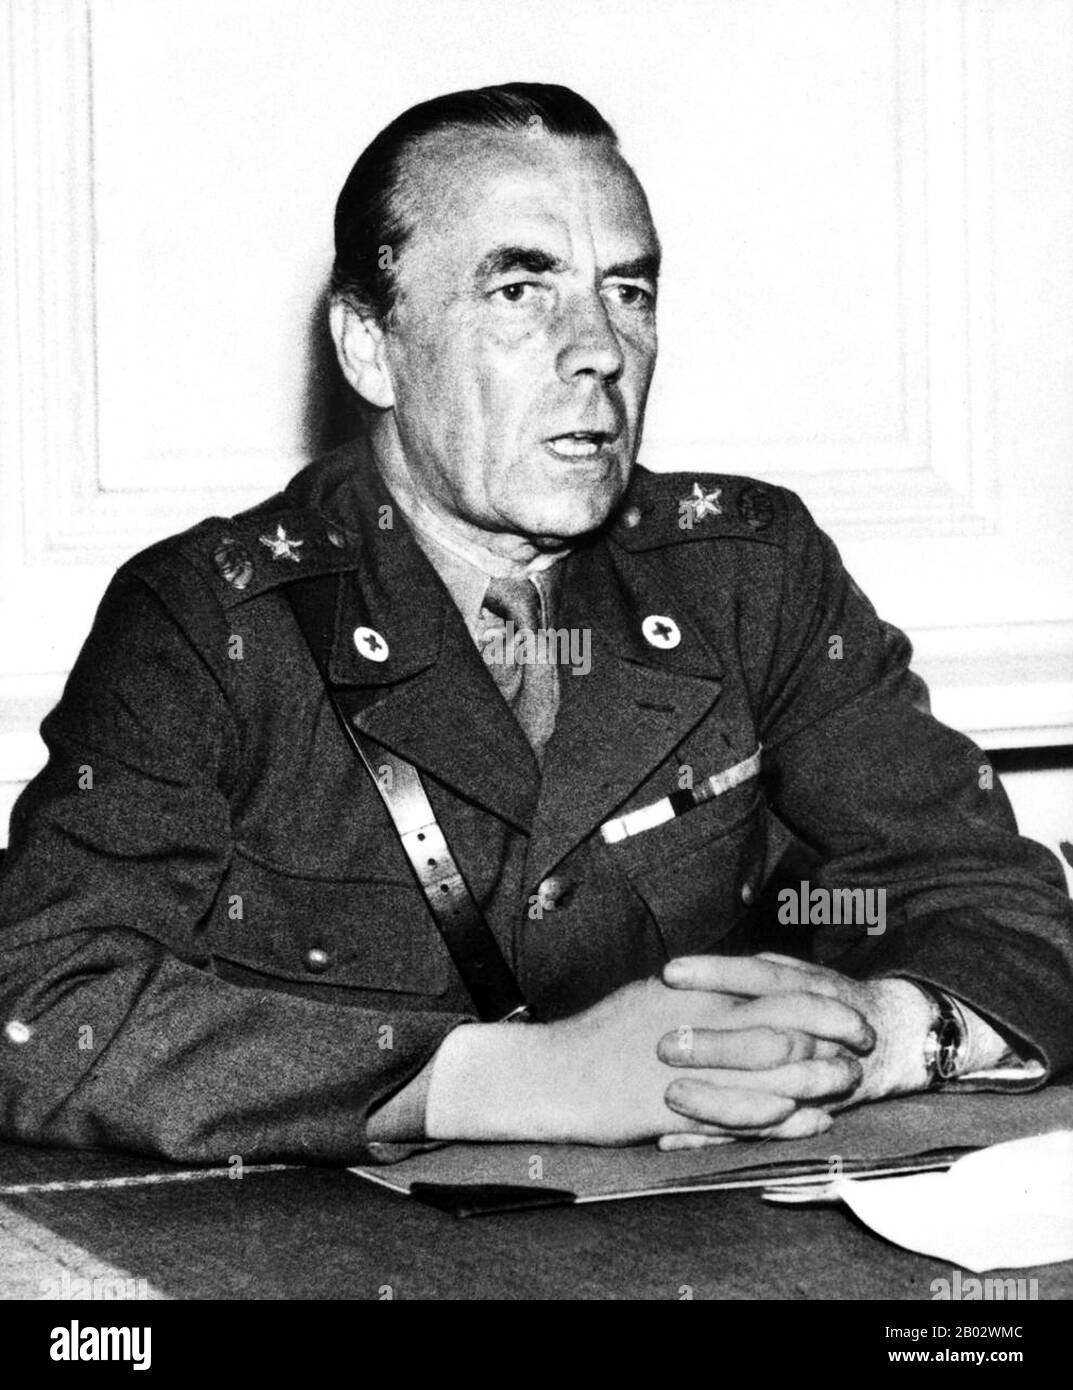 Folke Bernadotte, Graf von Wisborg (2. Januar 1895 - 17. September 1948) war eine schwedische Diplomatin und Adelige. Während des zweiten Weltkriegs handelte er die Freilassung von etwa 31.000 Häftlingen aus deutschen Konzentrationslagern aus, darunter 450 dänische Juden aus dem Lager Theresienstadt. Sie wurden am 14. April 1945 freigelassen. 1945 erhielt er von Heinrich Himmler ein deutsches Kapitulationsangebot, das Angebot wurde jedoch letztlich abgelehnt. Nach dem Krieg wurde Bernadotte einstimmig zum UN-Sicherheitsratsvermittler im arabisch-israelischen Konflikt von 1947-1948 gewählt. Er wurde 194 in Jerusalem ermordet Stockfoto